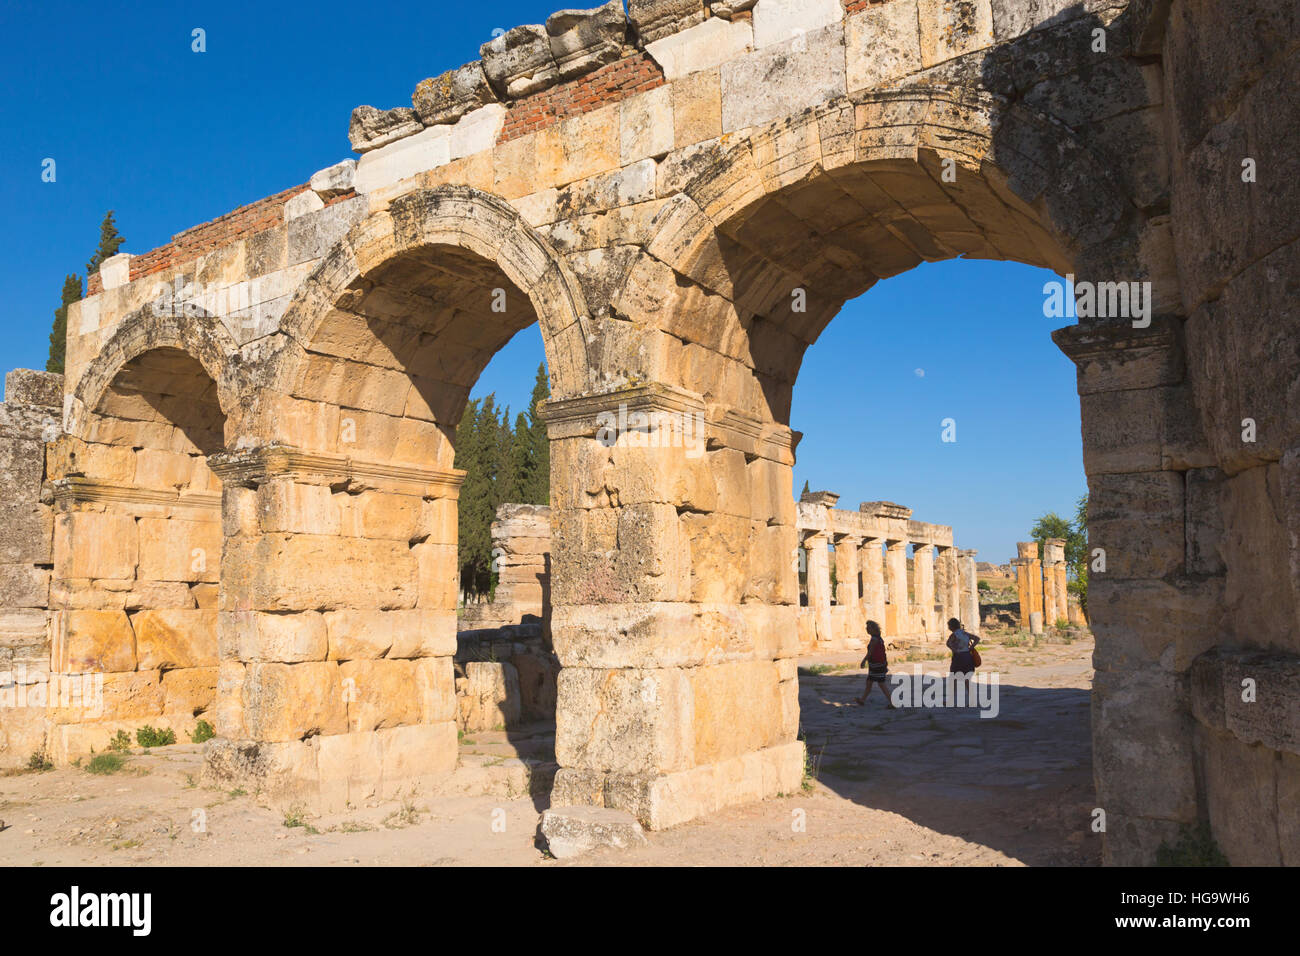 Hiérapolis, province de Denizli, Turquie. Ruines de la ville antique. La porte romaine du nord, également connu sous le nom de la voie Domitienne, de la porte ou de passage de Domitien, ou le Banque D'Images